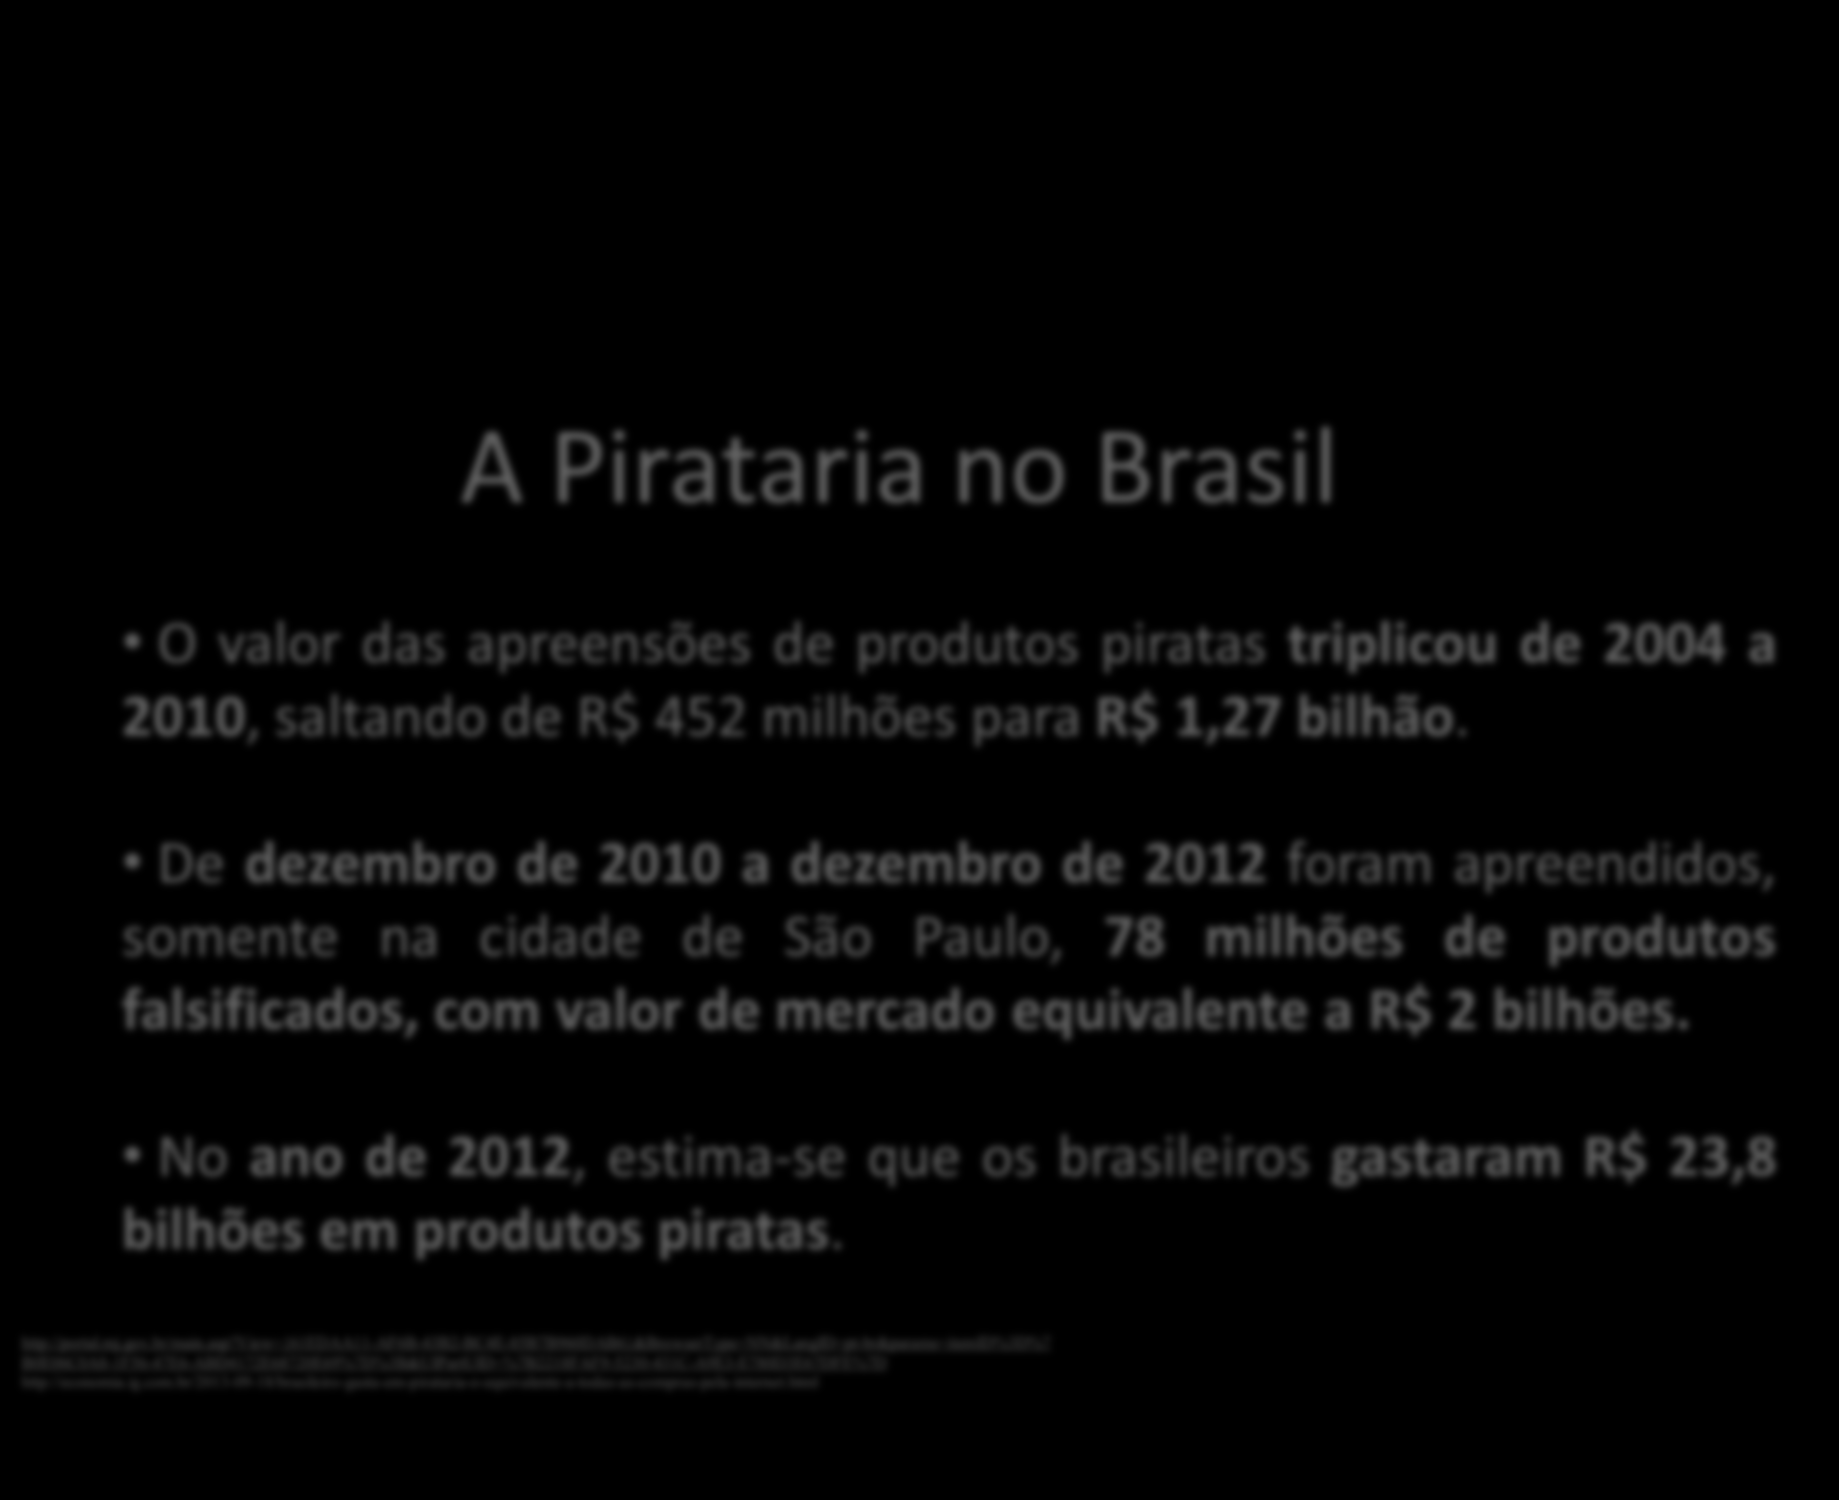 A Pirataria no Brasil O valor das apreensões de produtos piratas triplicou de 2004 a 2010, saltando de R$ 452 milhões para R$ 1,27 bilhão.